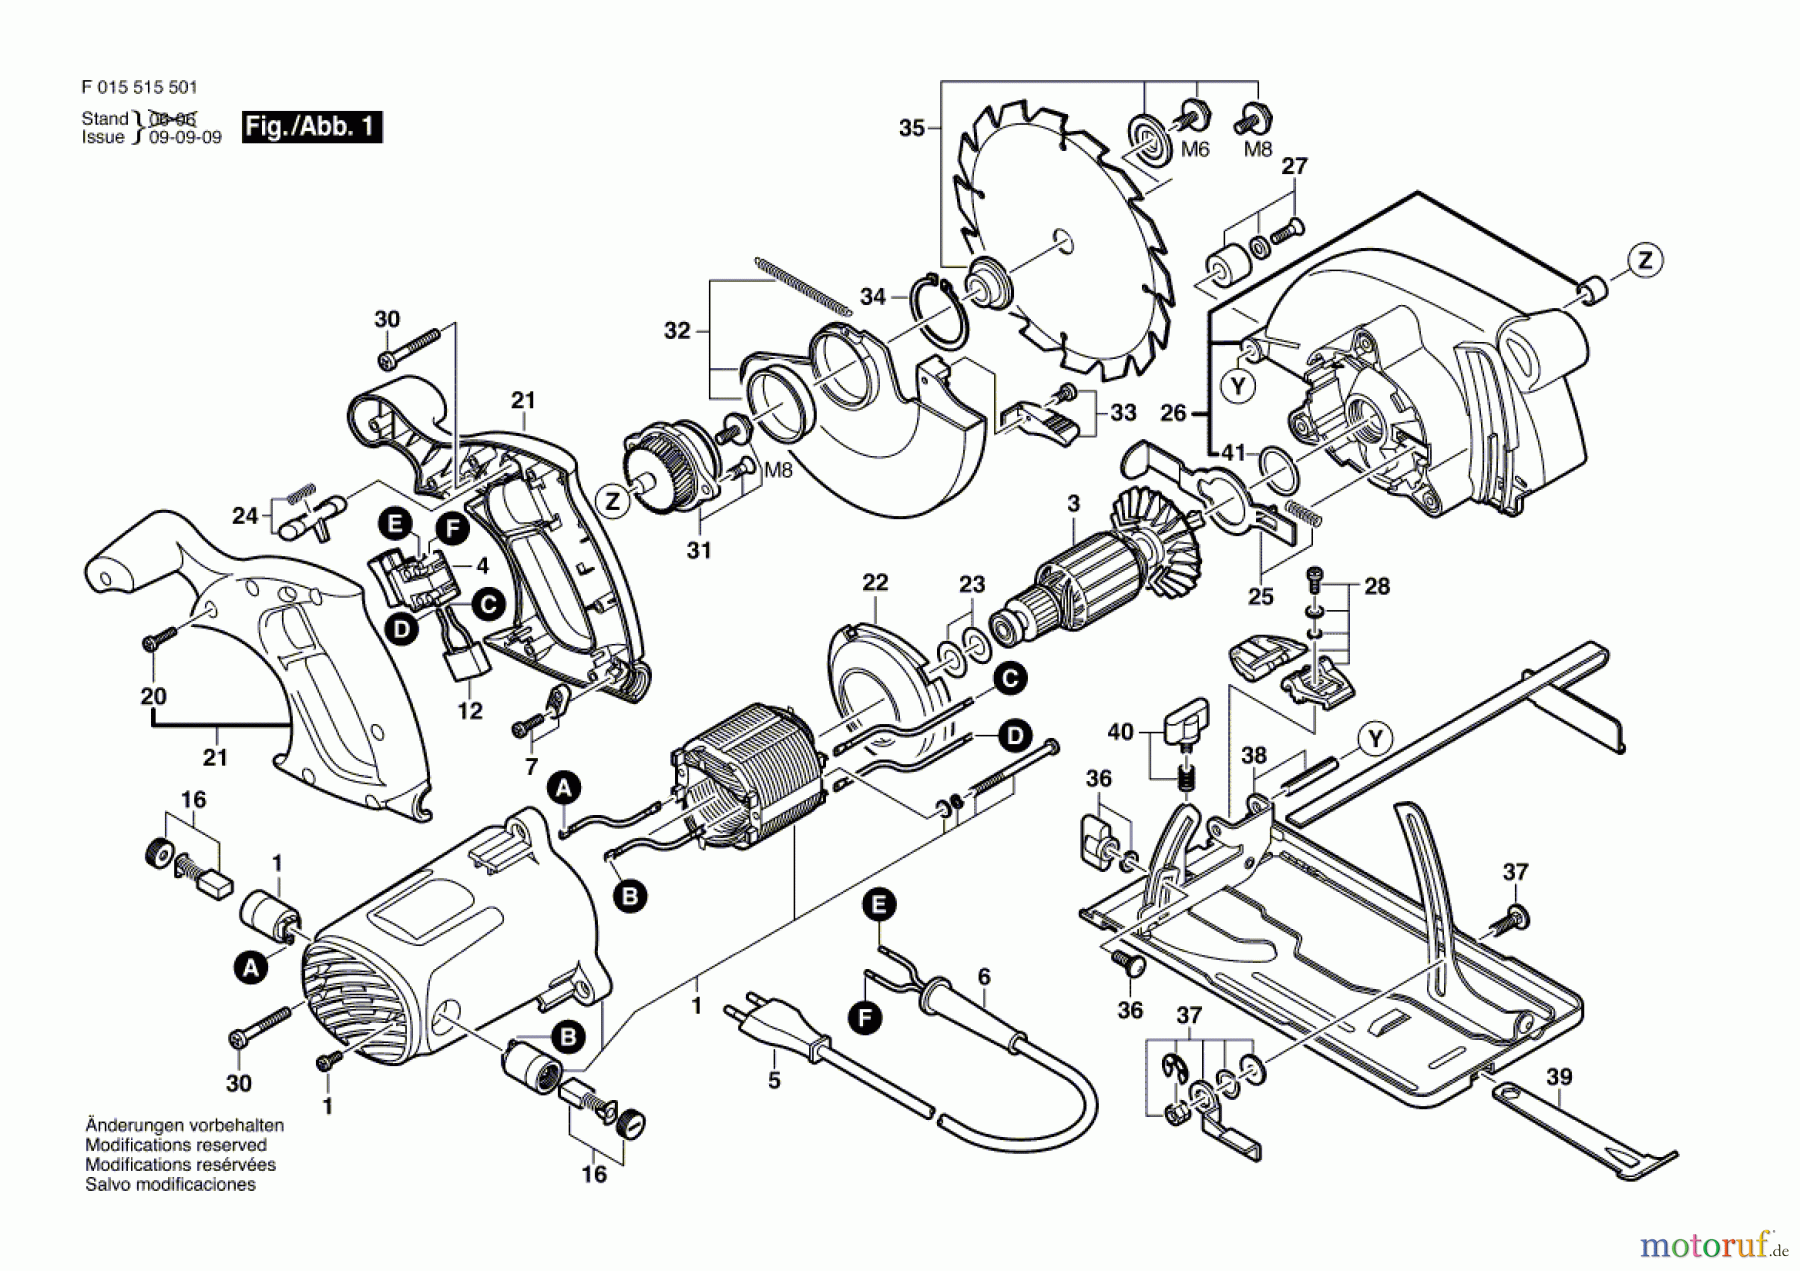  Bosch Werkzeug Kreissäge 5155 Seite 1